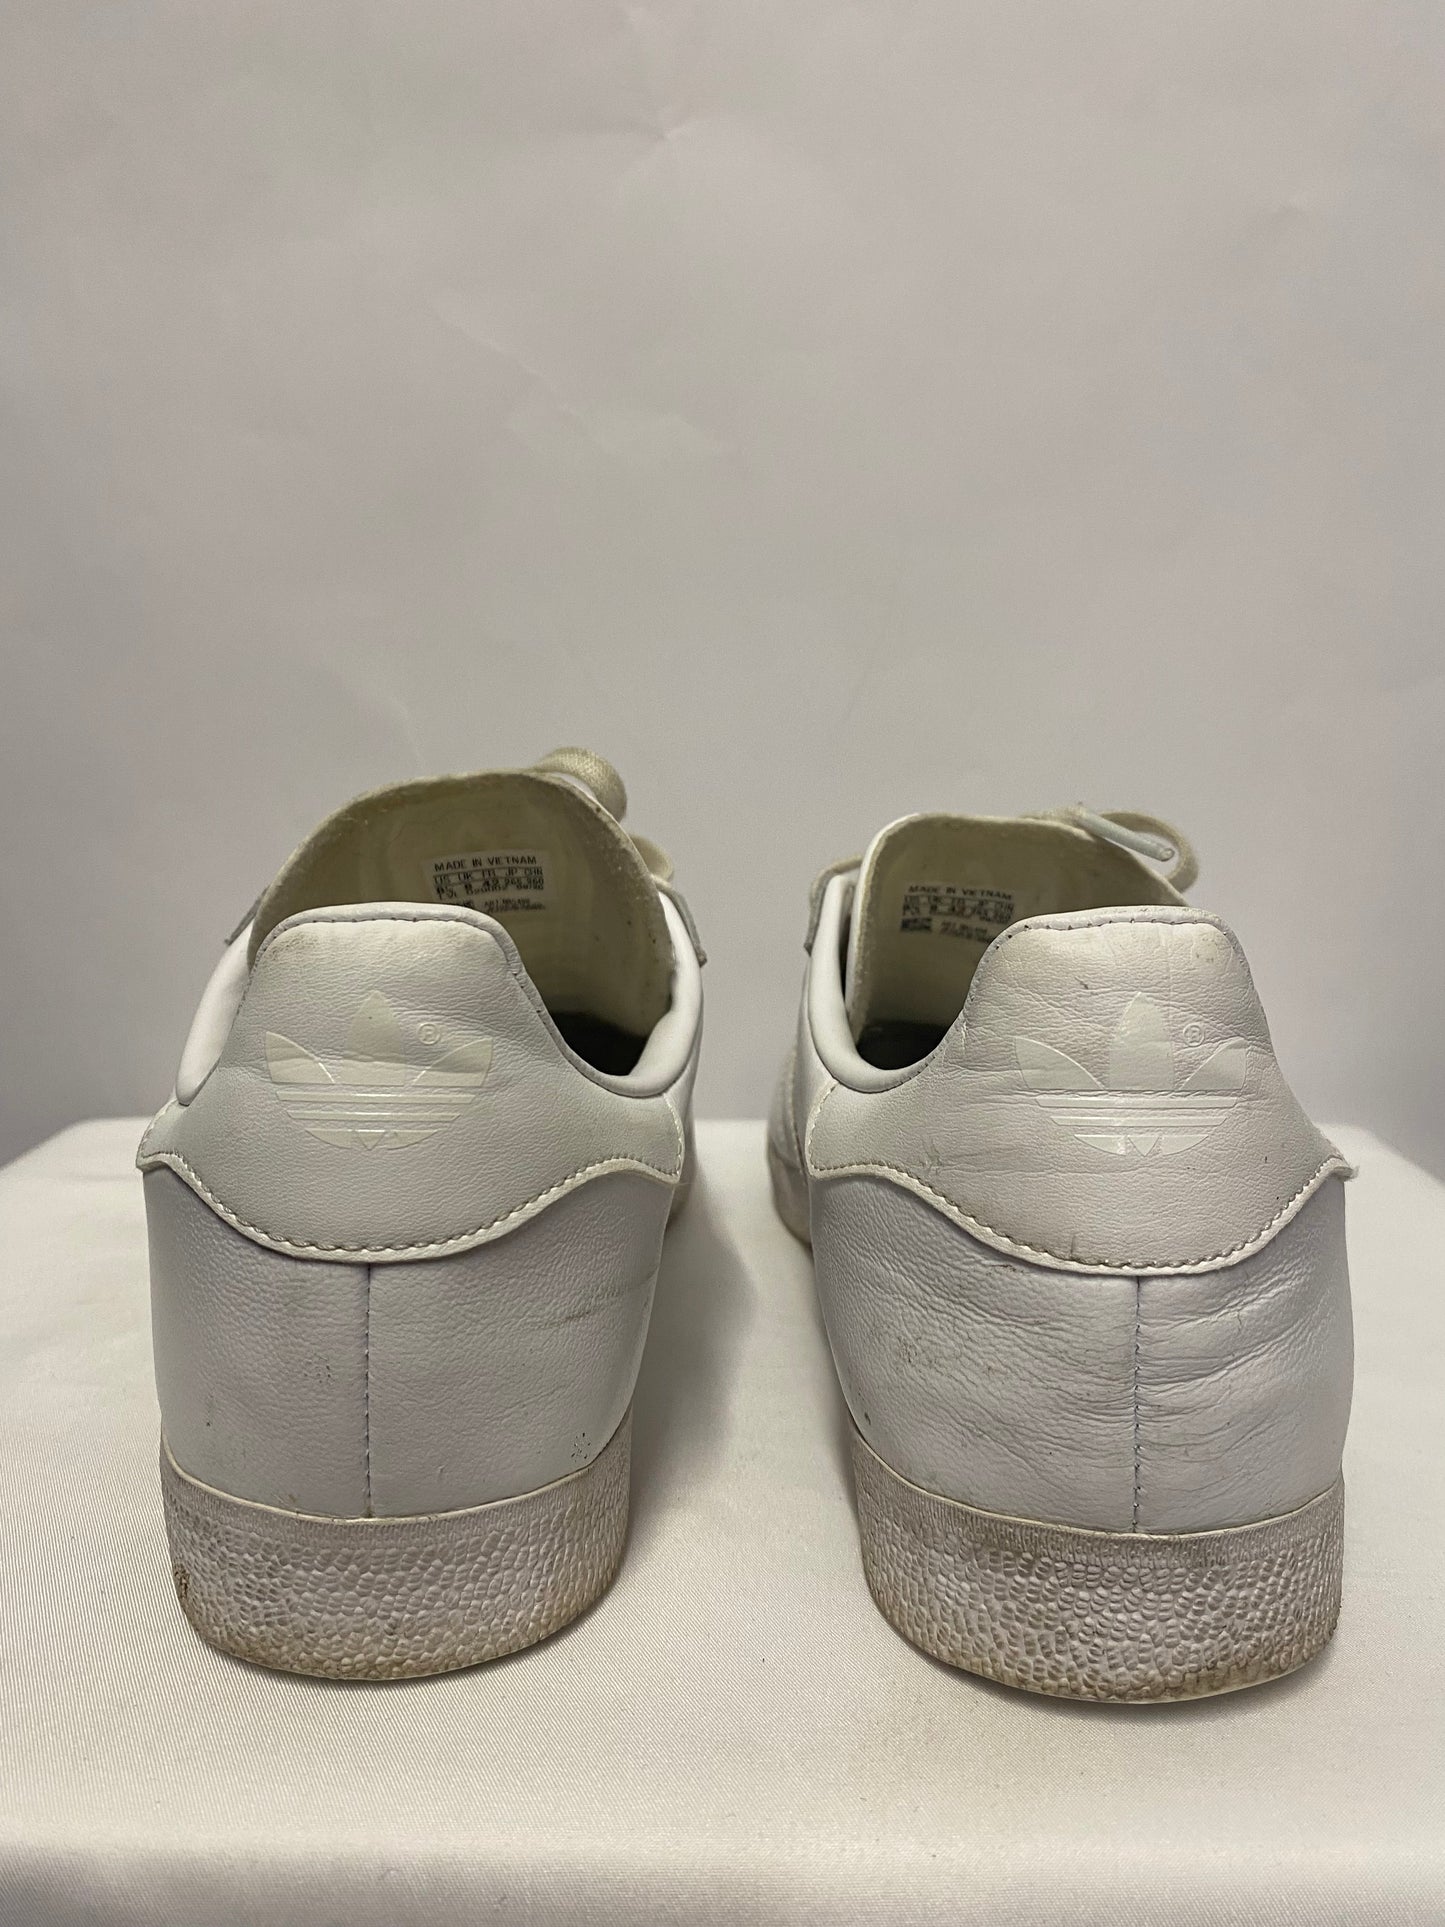 Adidas Men's Triple White Gazelle Leather 8